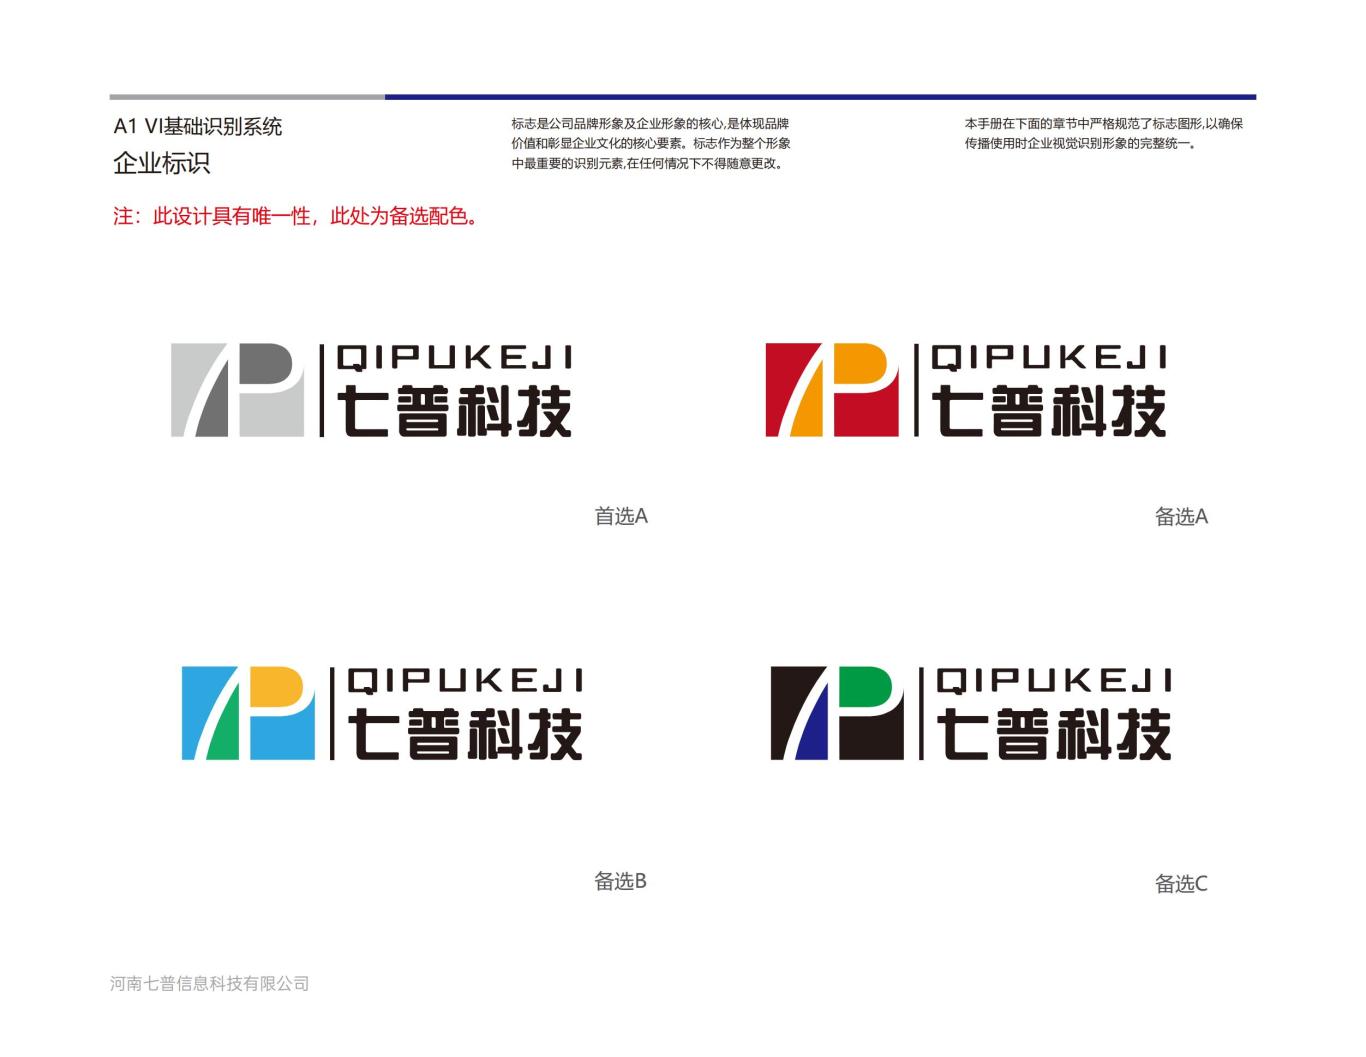 河南七普信息科技有限公司logo提案B图11